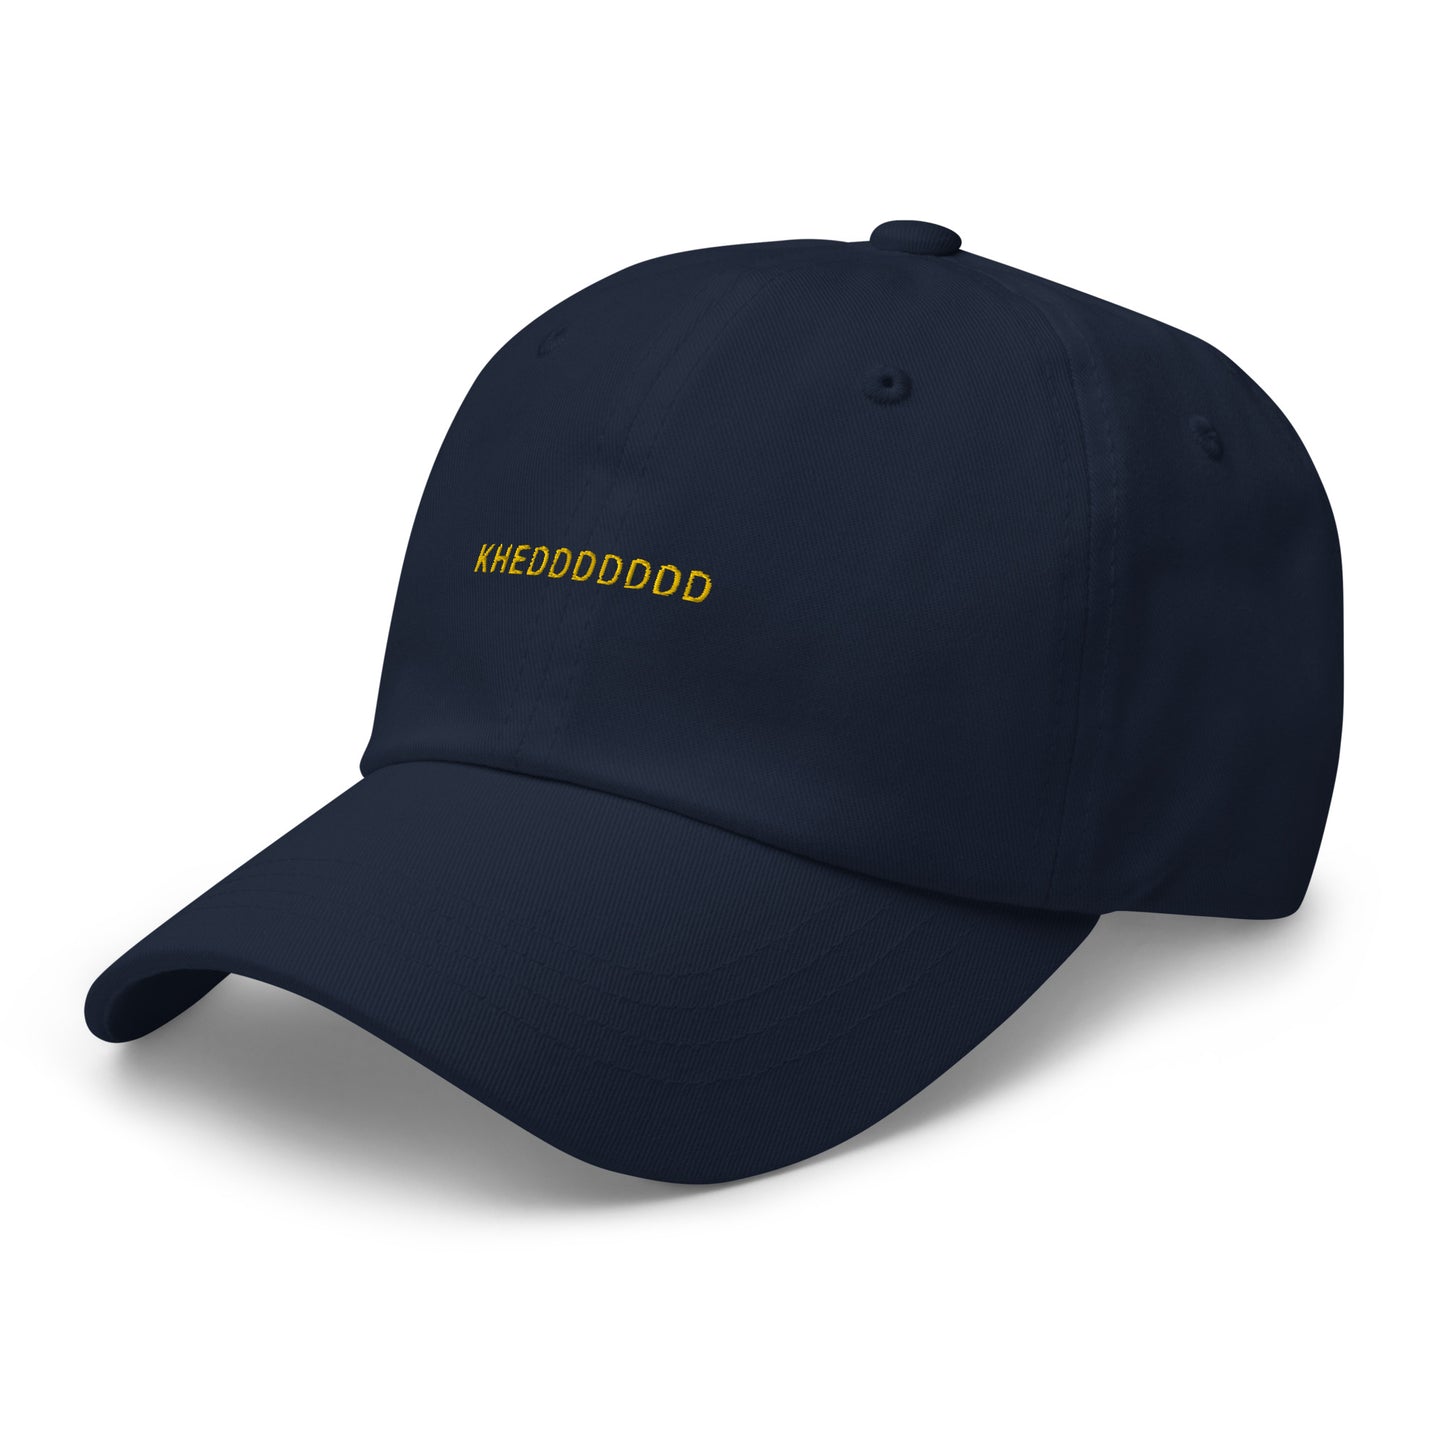 navy hat that says "khedddddd" in gold lettering